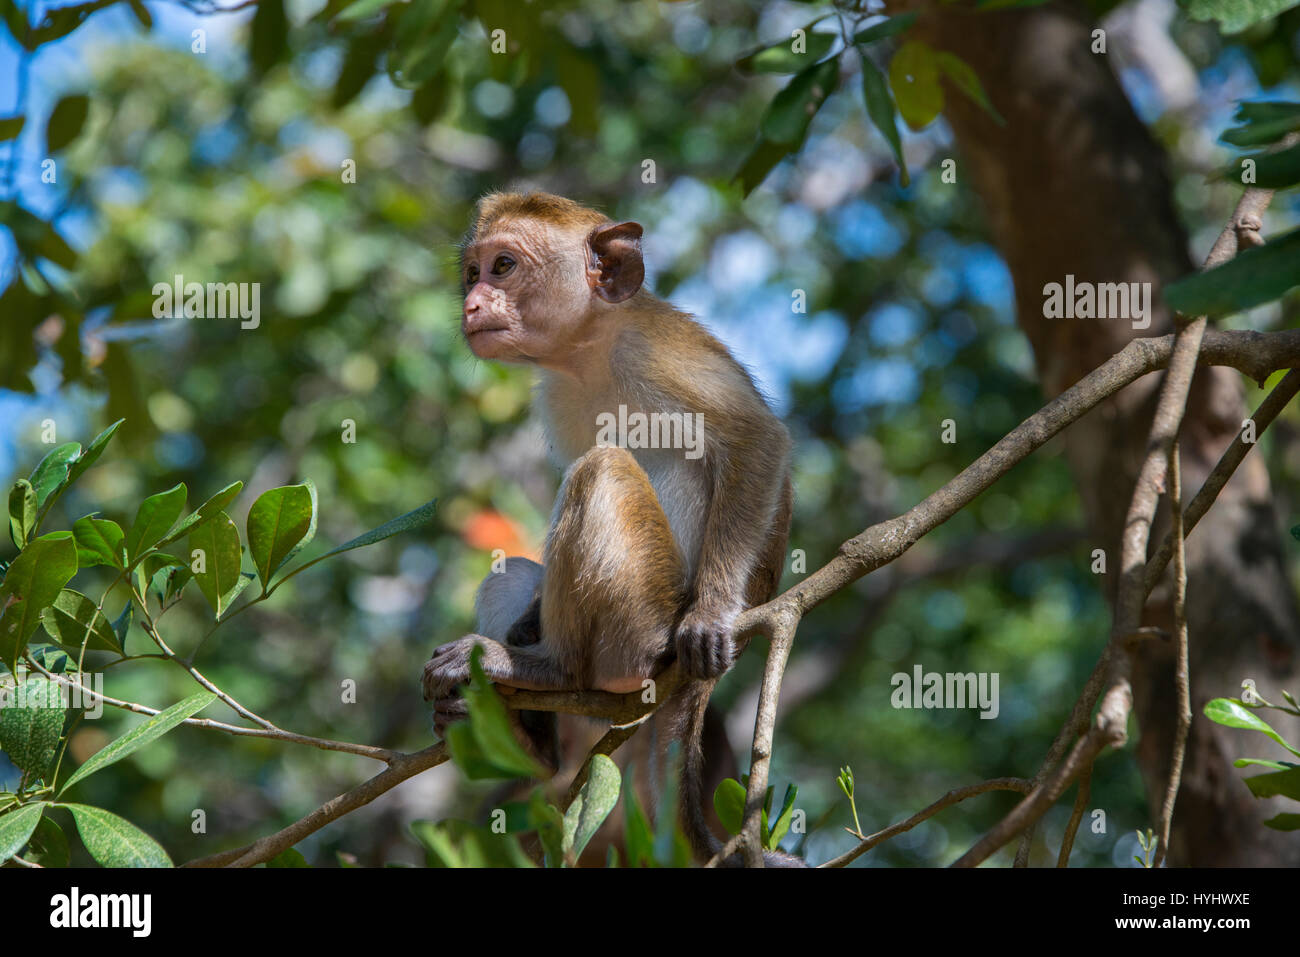 Sri Lanka, Tissamaharama, Yala National Park, Ruhuna National Park, sezione 1. Toque macaque (WILD: Macaca sinica) scimmia del Vecchio Mondo endemica di Sri Lan Foto Stock